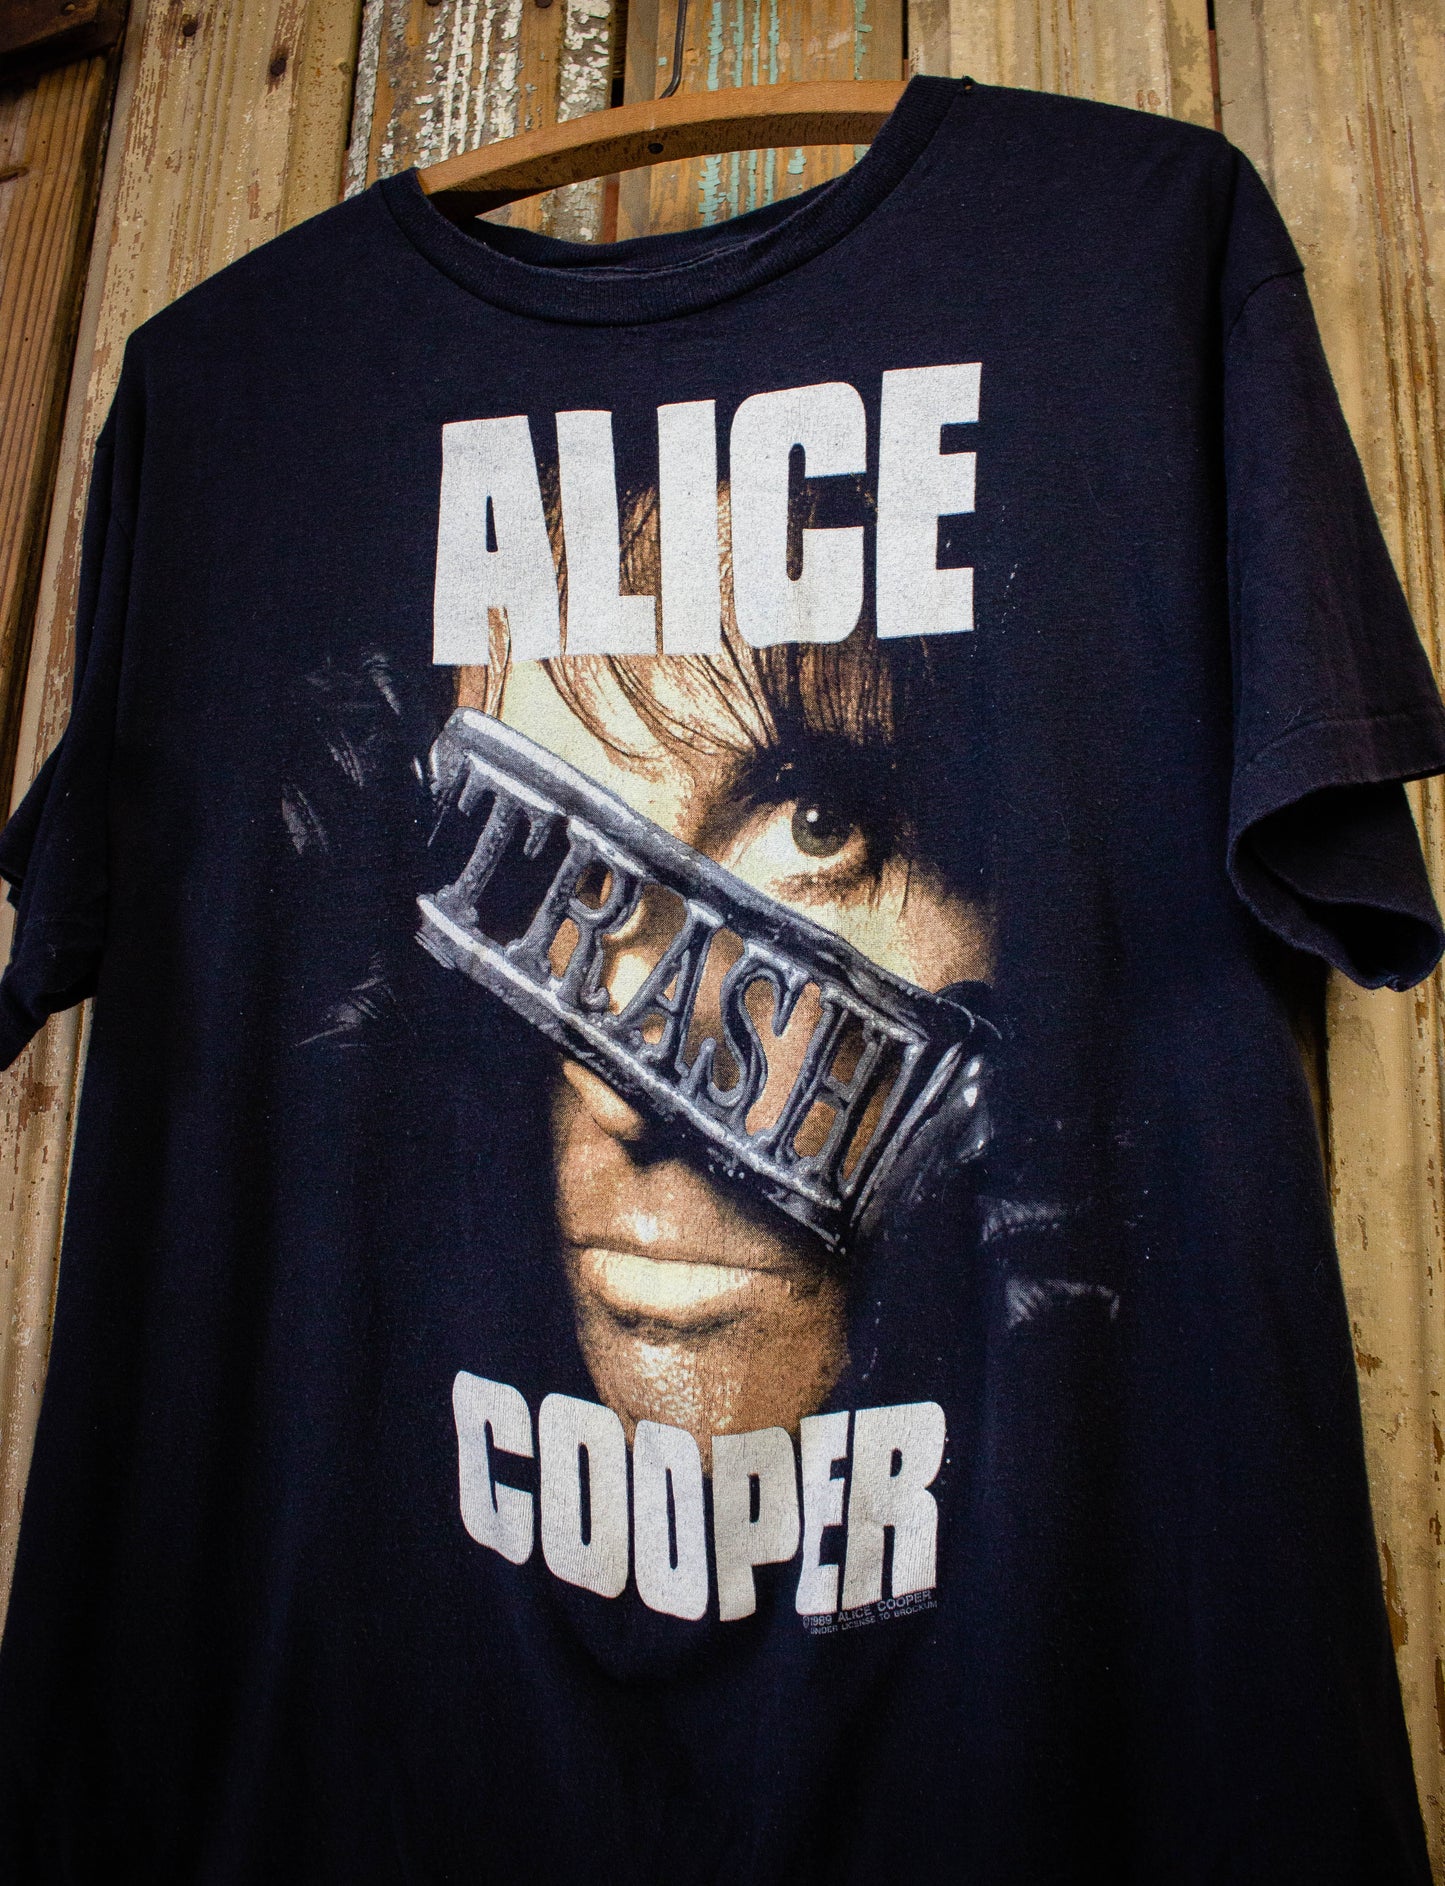 Vintage Alice Cooper Trashes Detroit Concert t Shirt 1989 Black XL